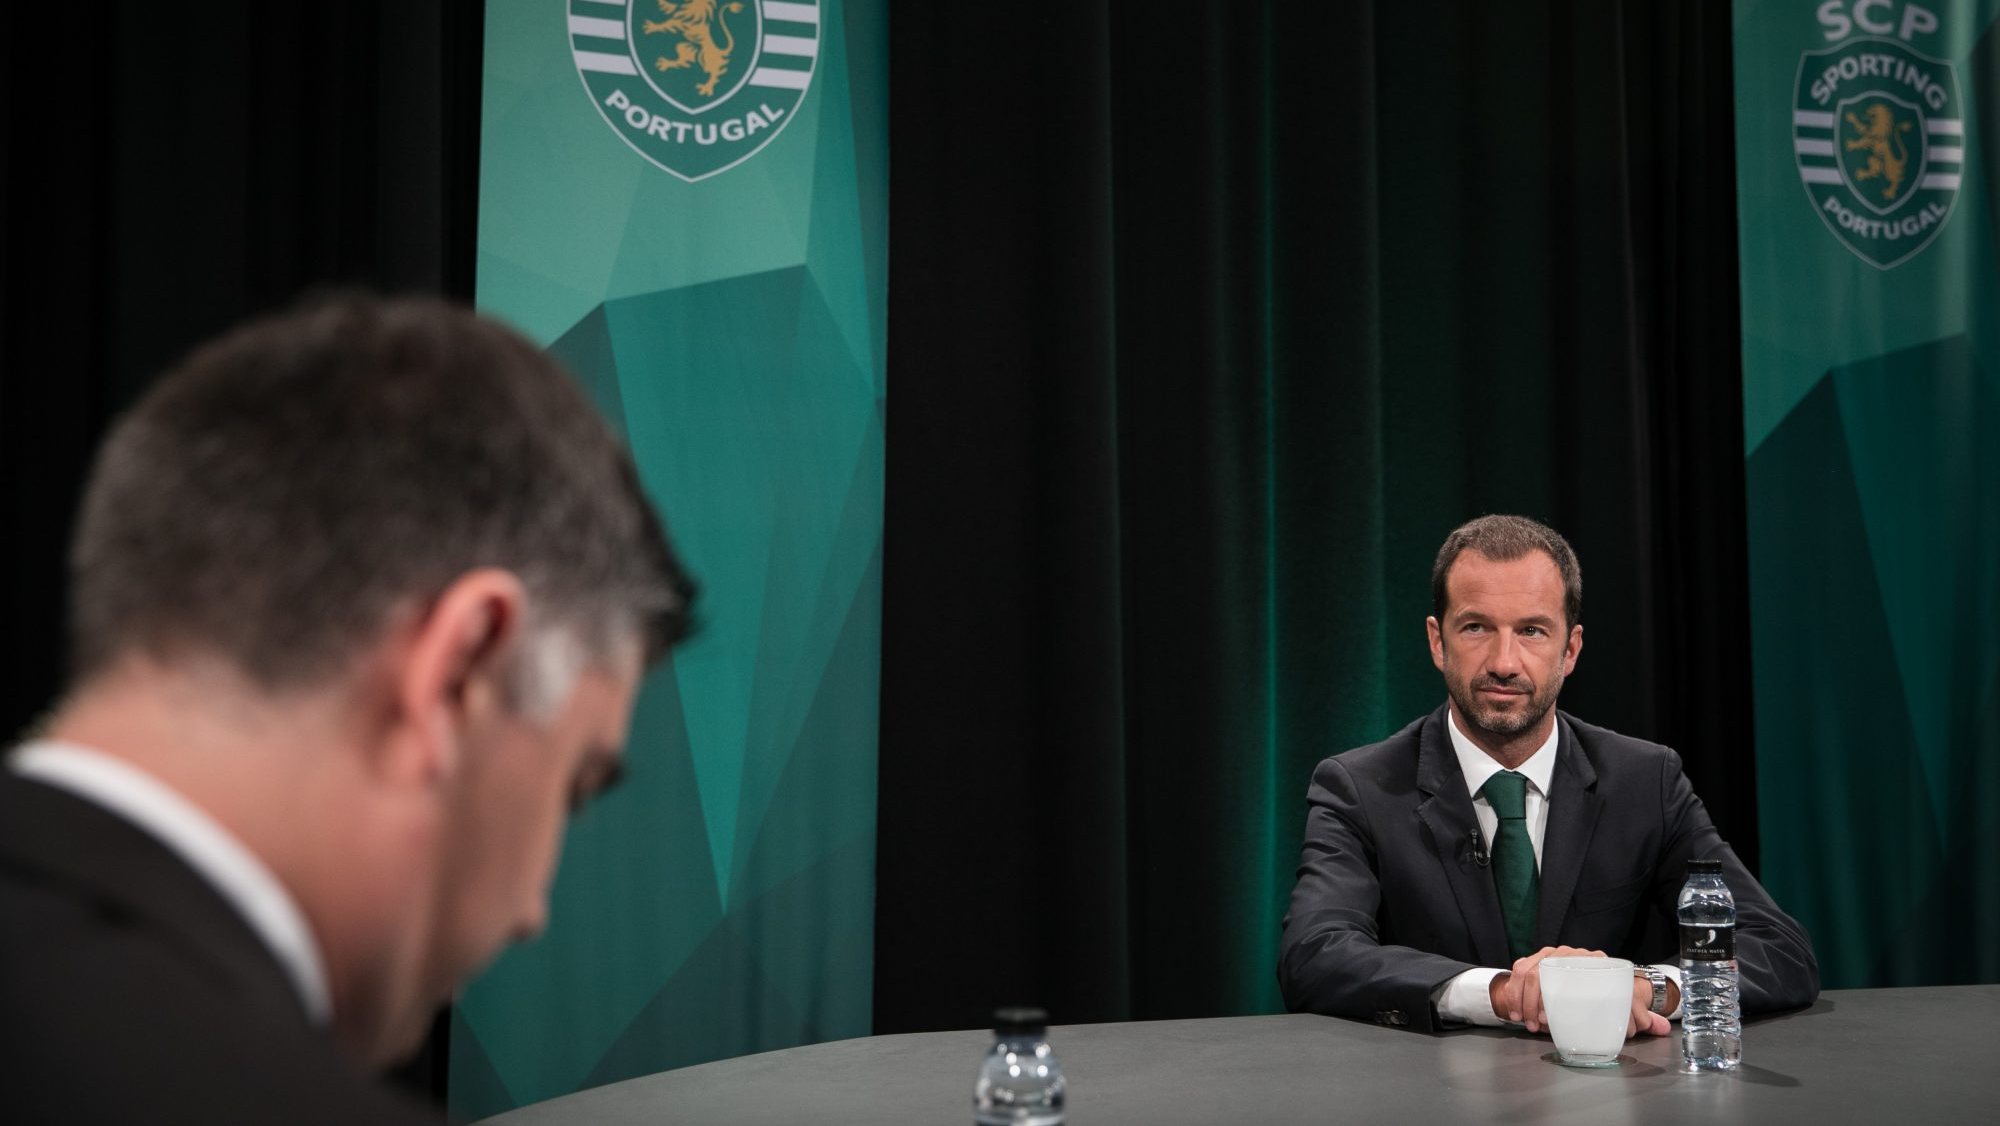 Fotografia do último debate entre candidatos à presidência do Sporting, em 2018, na Sporting TV, com o então candidato Frederico Varandas a ser o único repetente no debate de esta noite